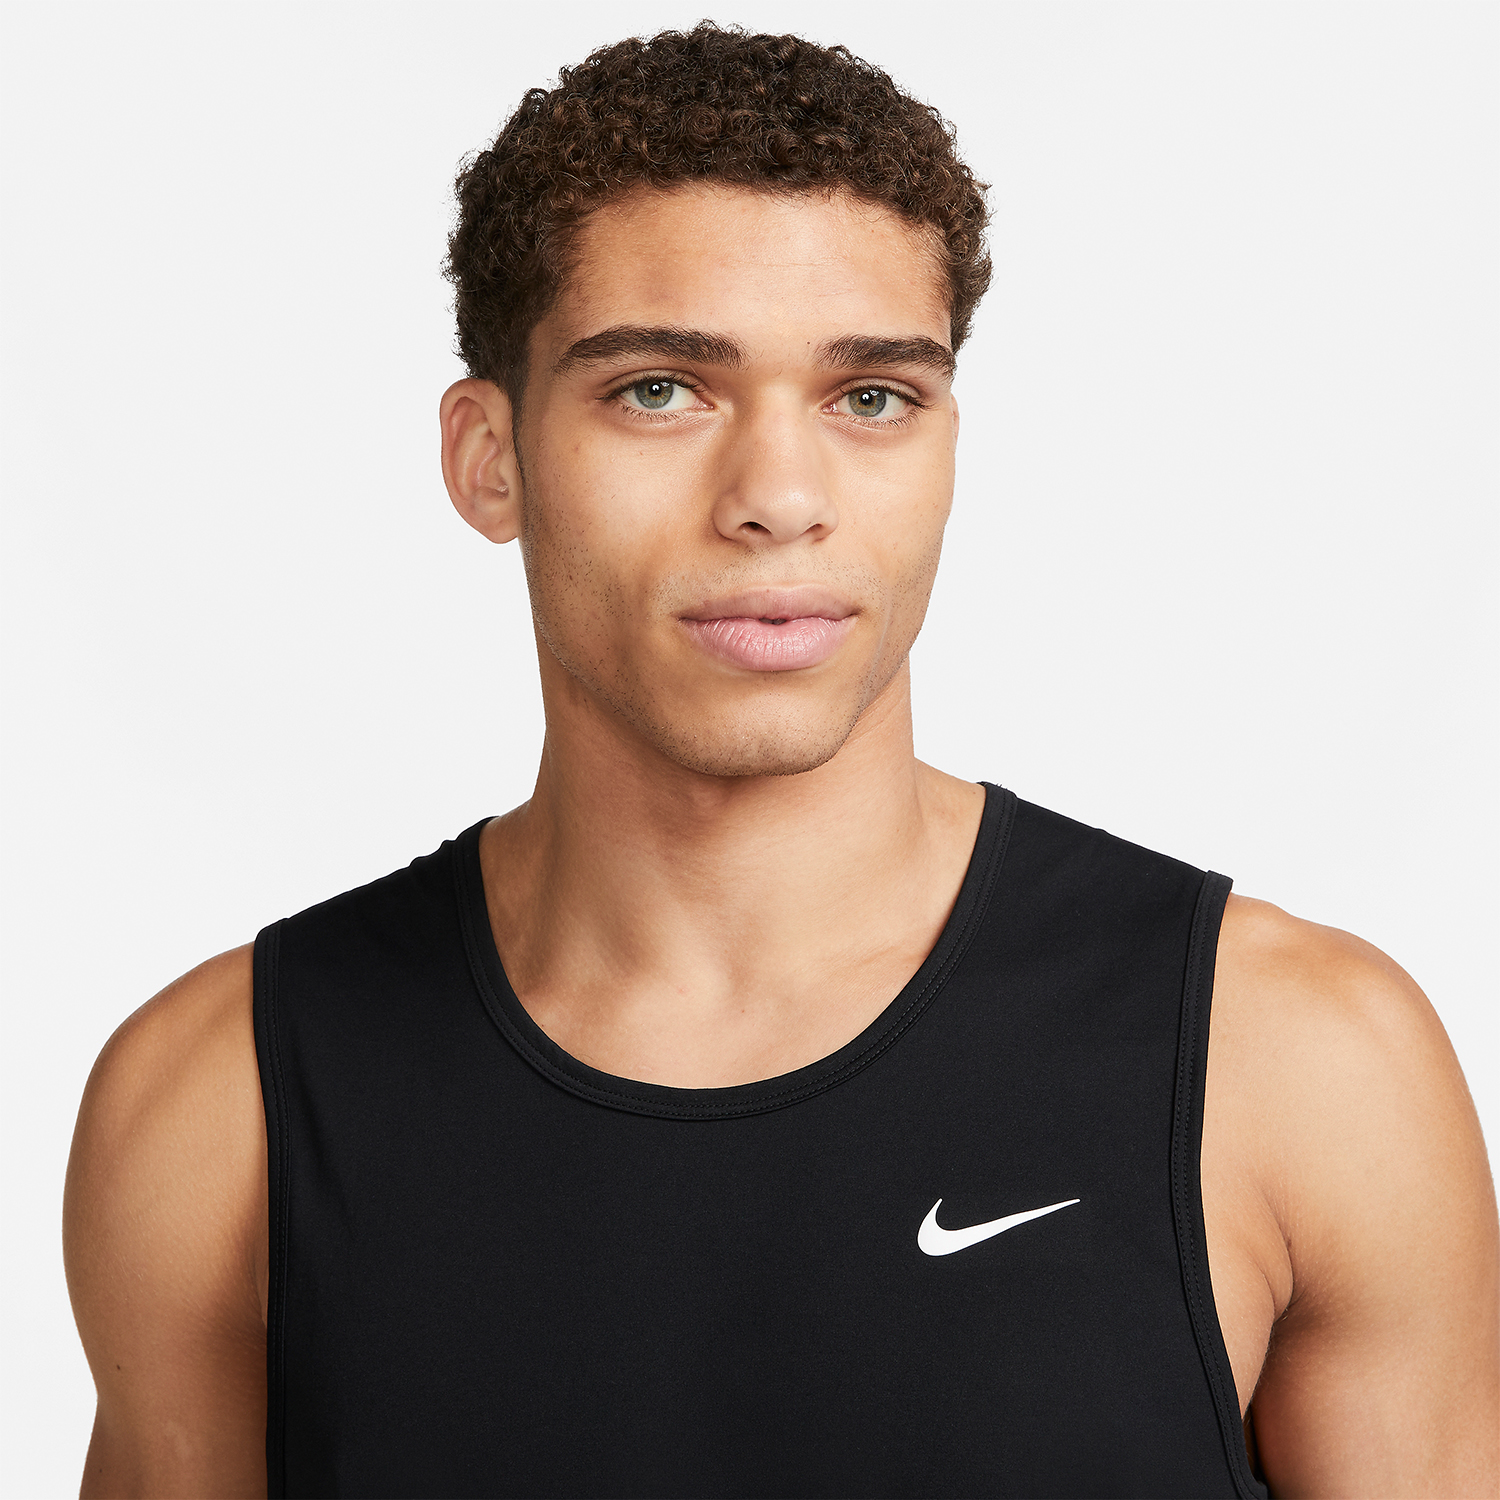 Nike Dri-FIT Hyverse Top - Black/White